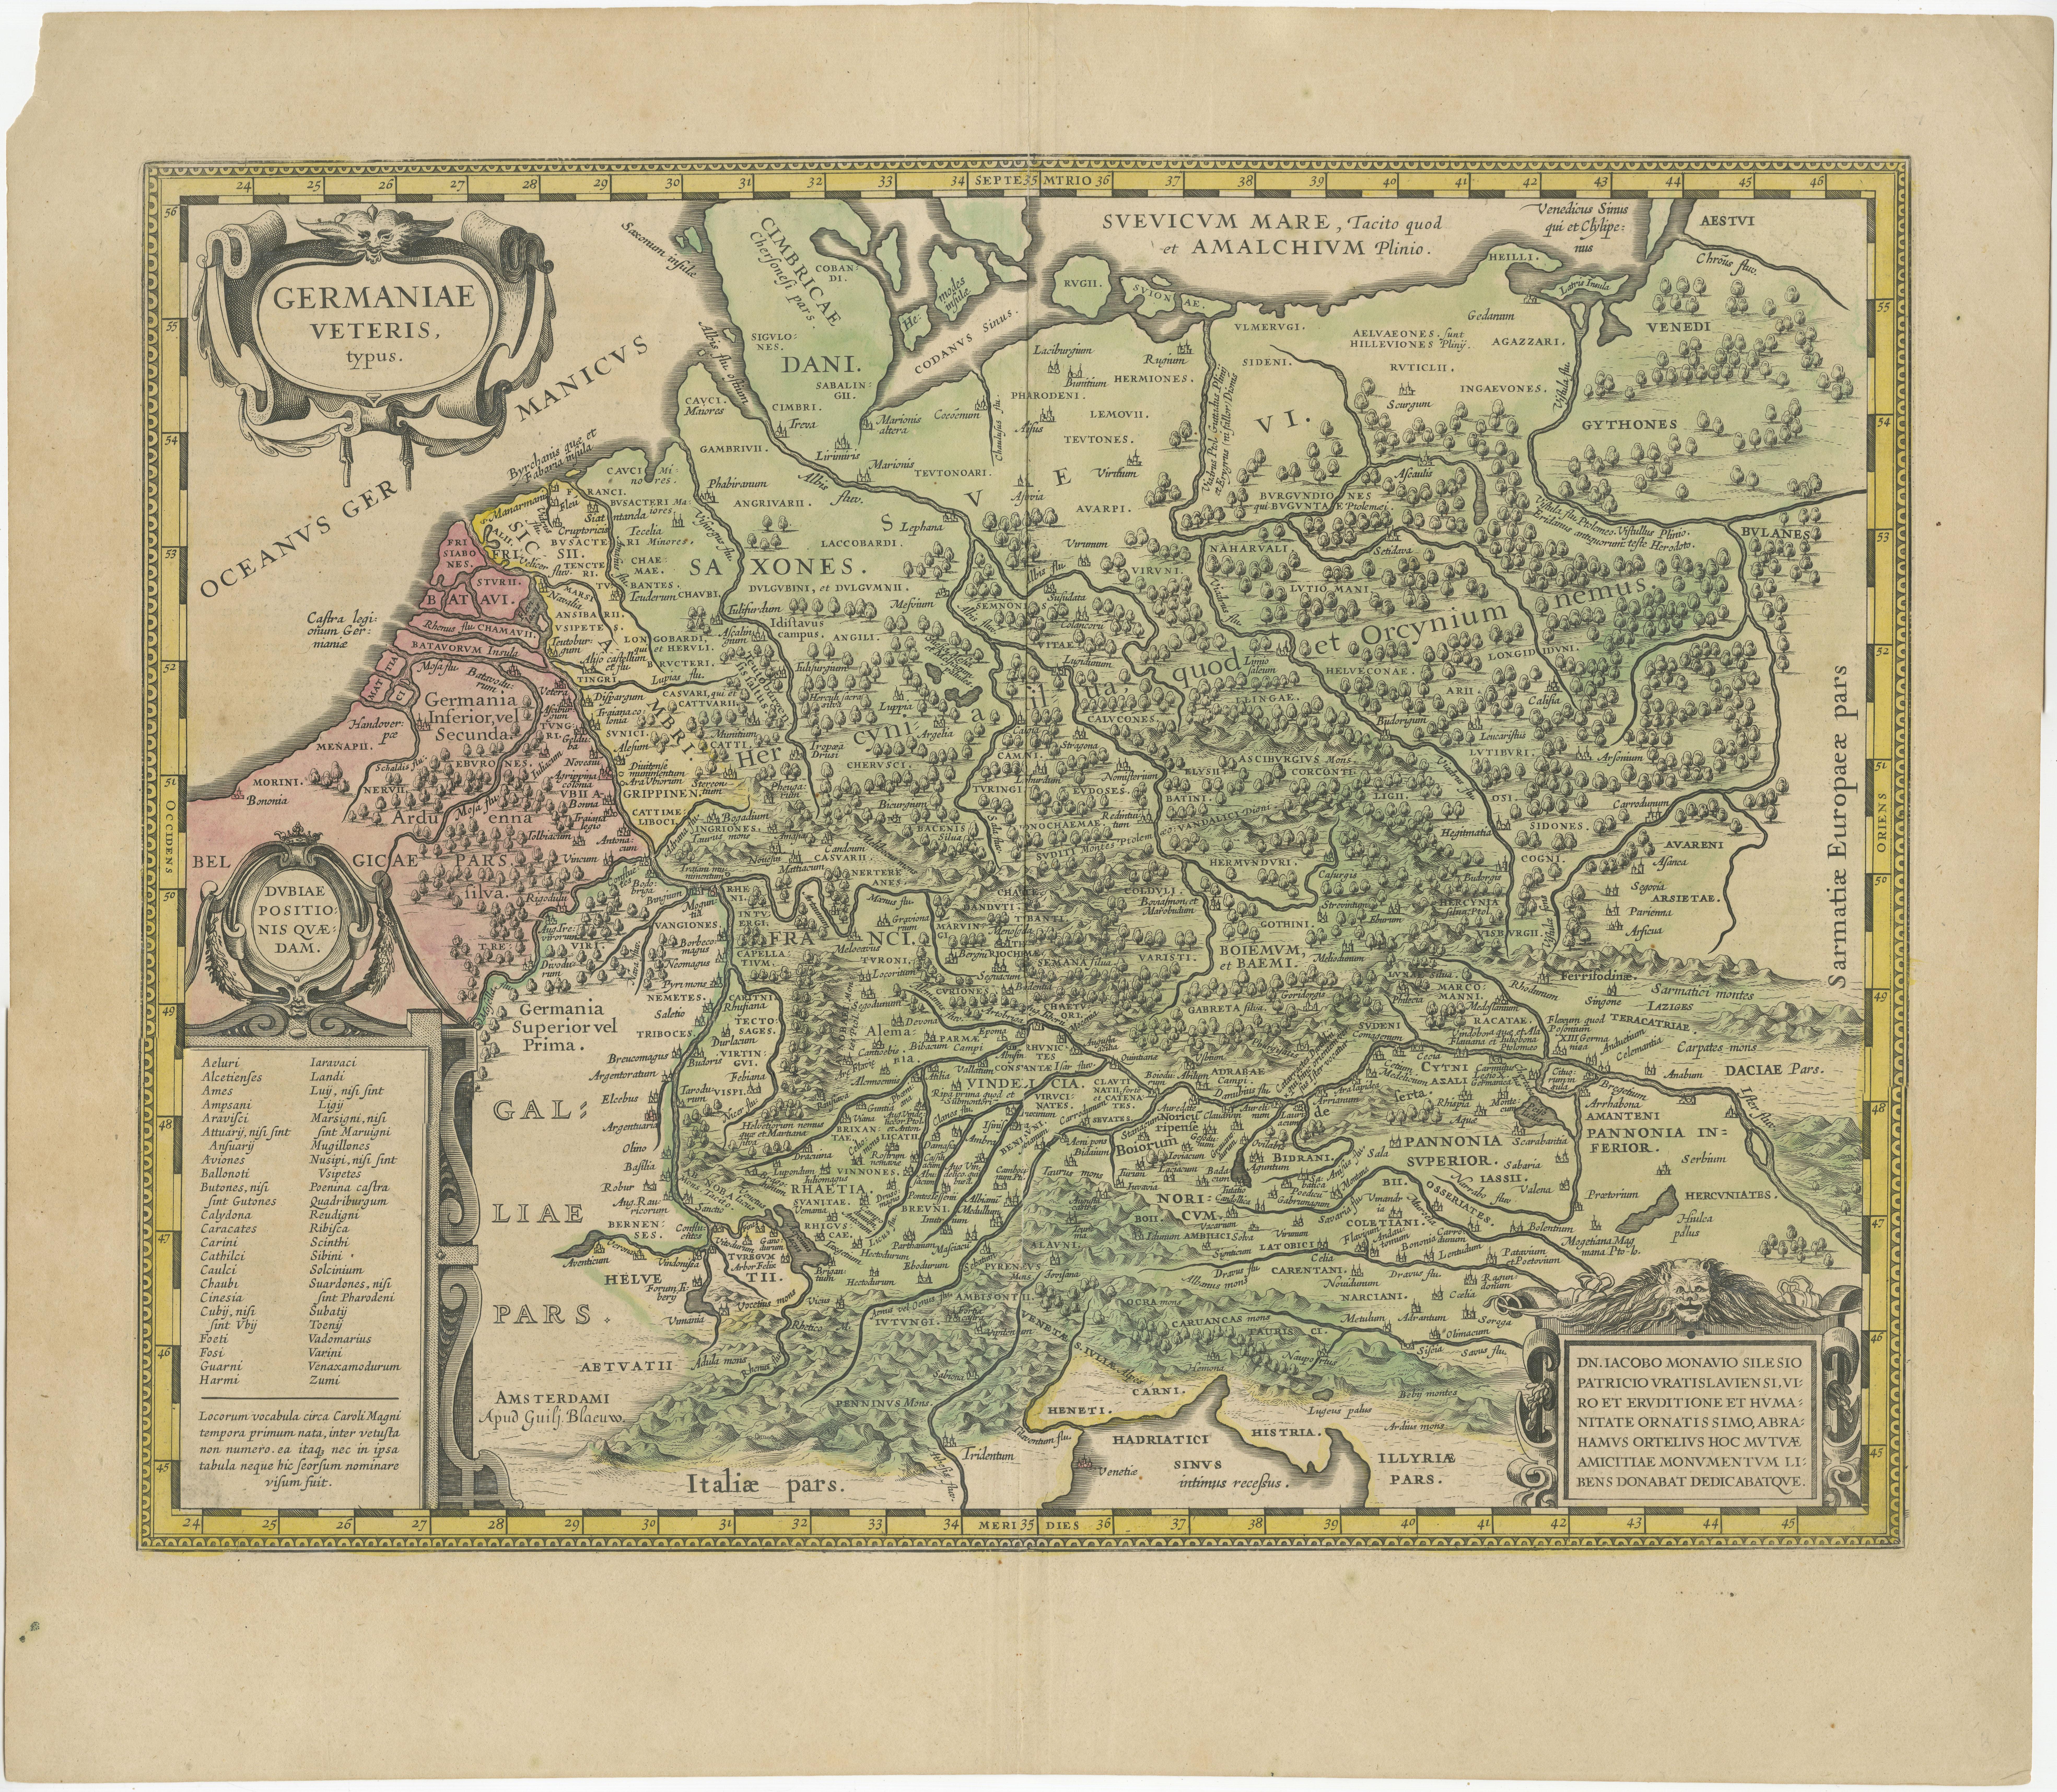 Antike Karte mit dem Titel 'Germaniae Veteris typus'. Sehr attraktive Karte des alten Deutschlands. Herausgegeben von G. Blaeu nach A. Ortelius, um 1630. 

Willem Janszoon Blaeu (1571-1638) war ein bekannter niederländischer Geograf und Verleger.